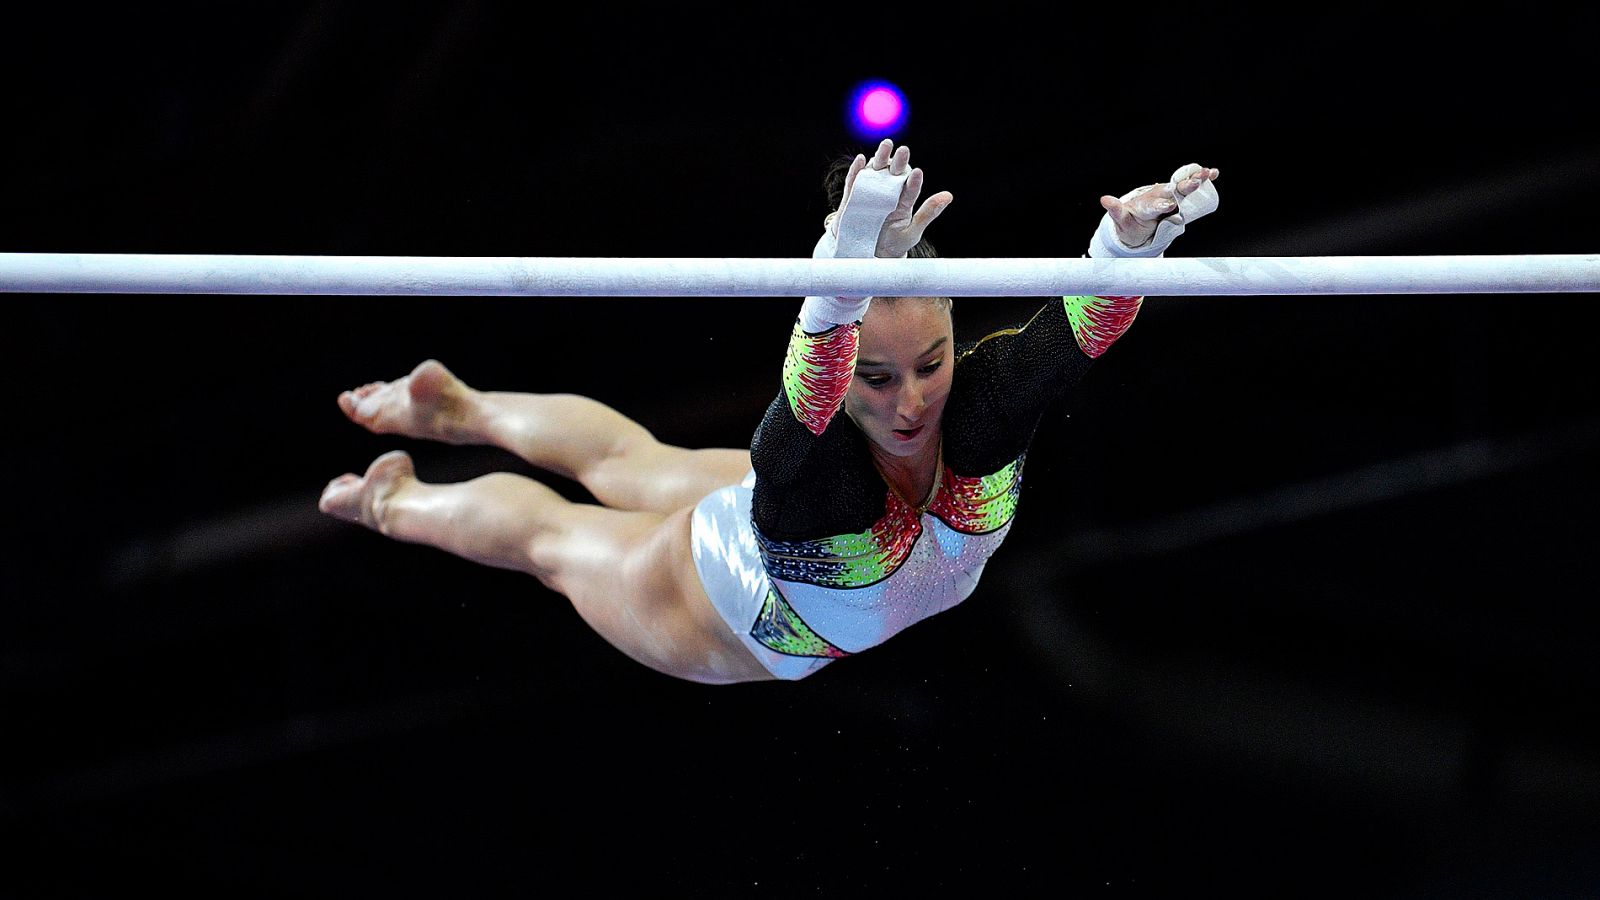 Mundial de gimnasia | Nina Derwael, campeona del mundo de asimétricas - rtve.es